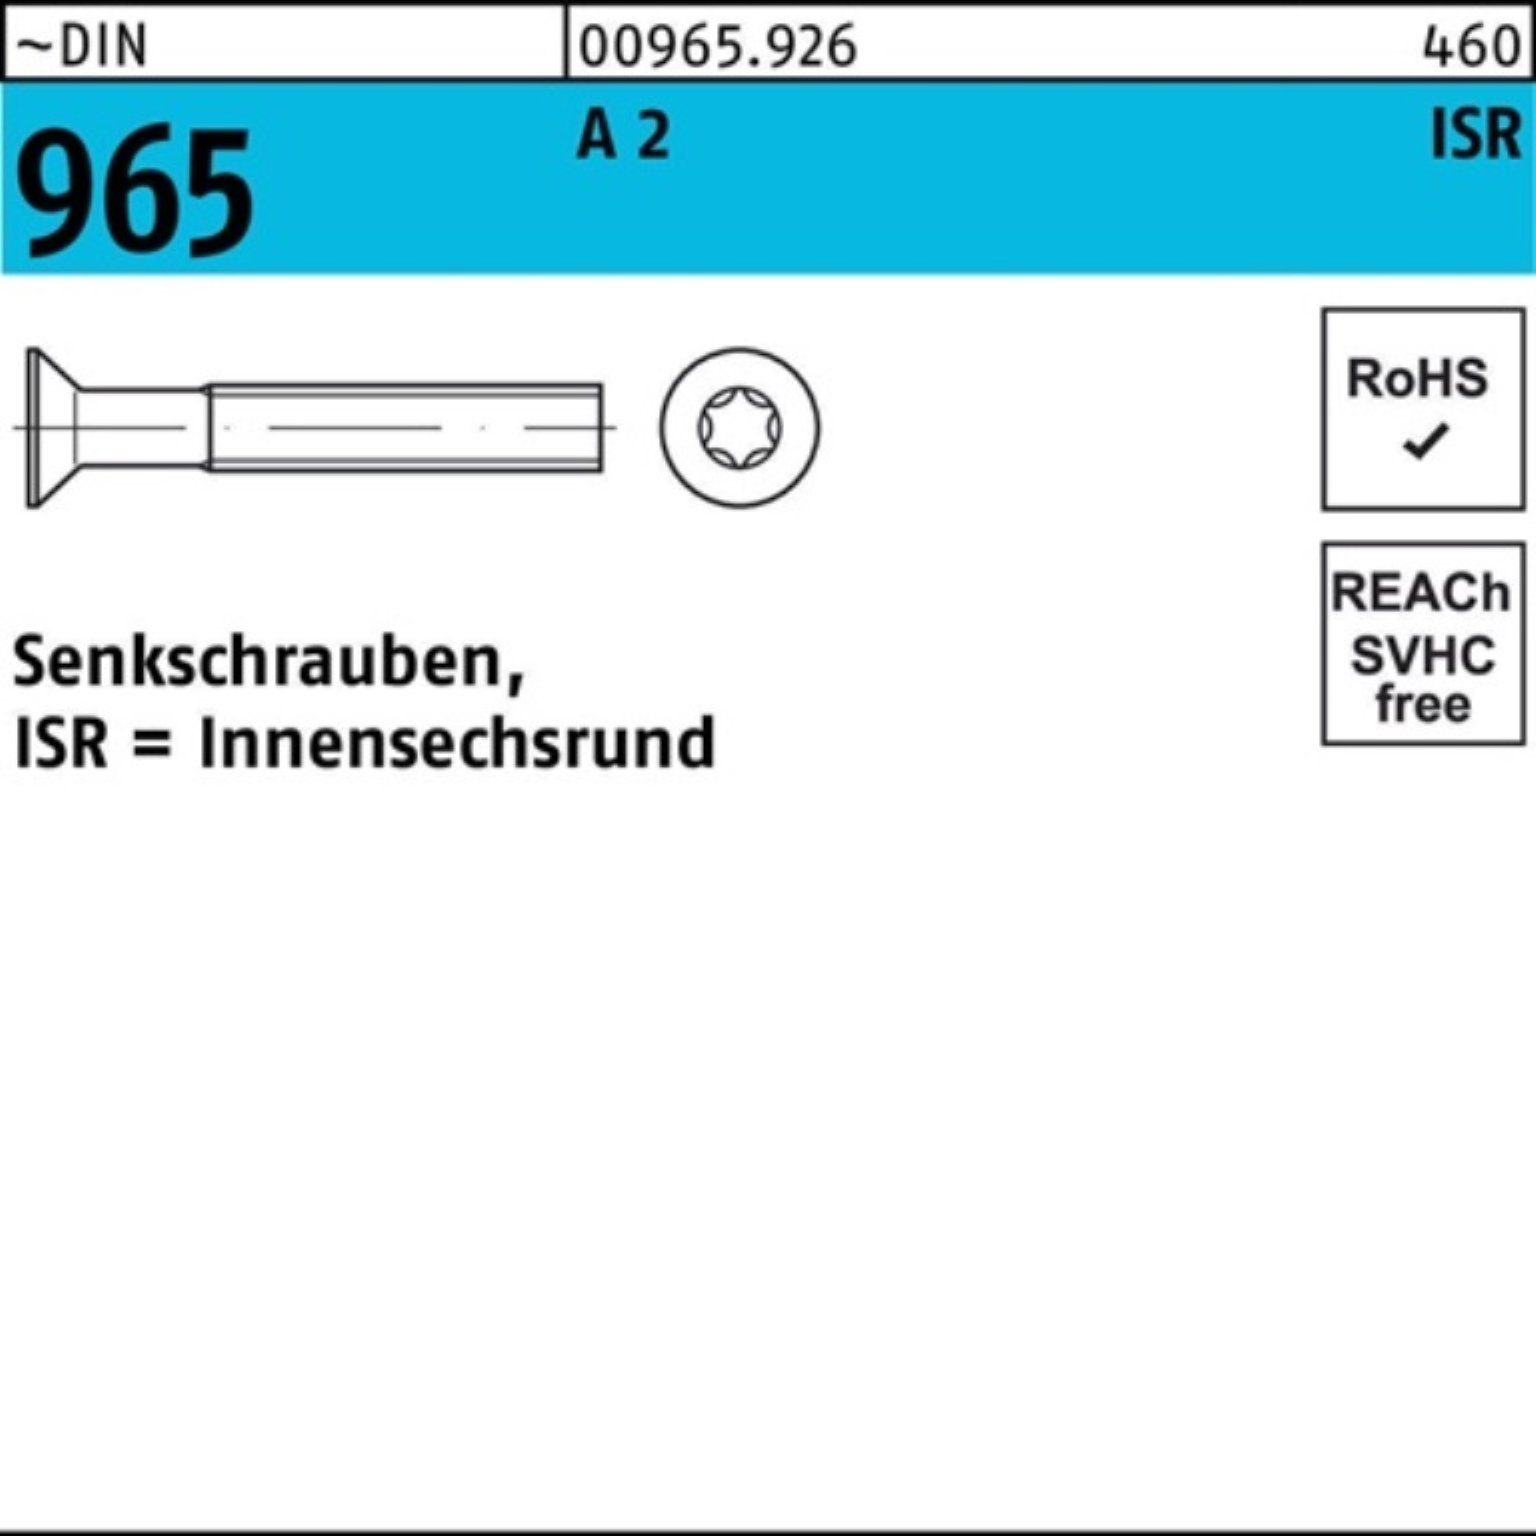 Reyher Senkschraube 10-T10 2 M3x A 9 Stück 1000 Senkschraube ISR Pack 1000er 965 DIN ~DIN